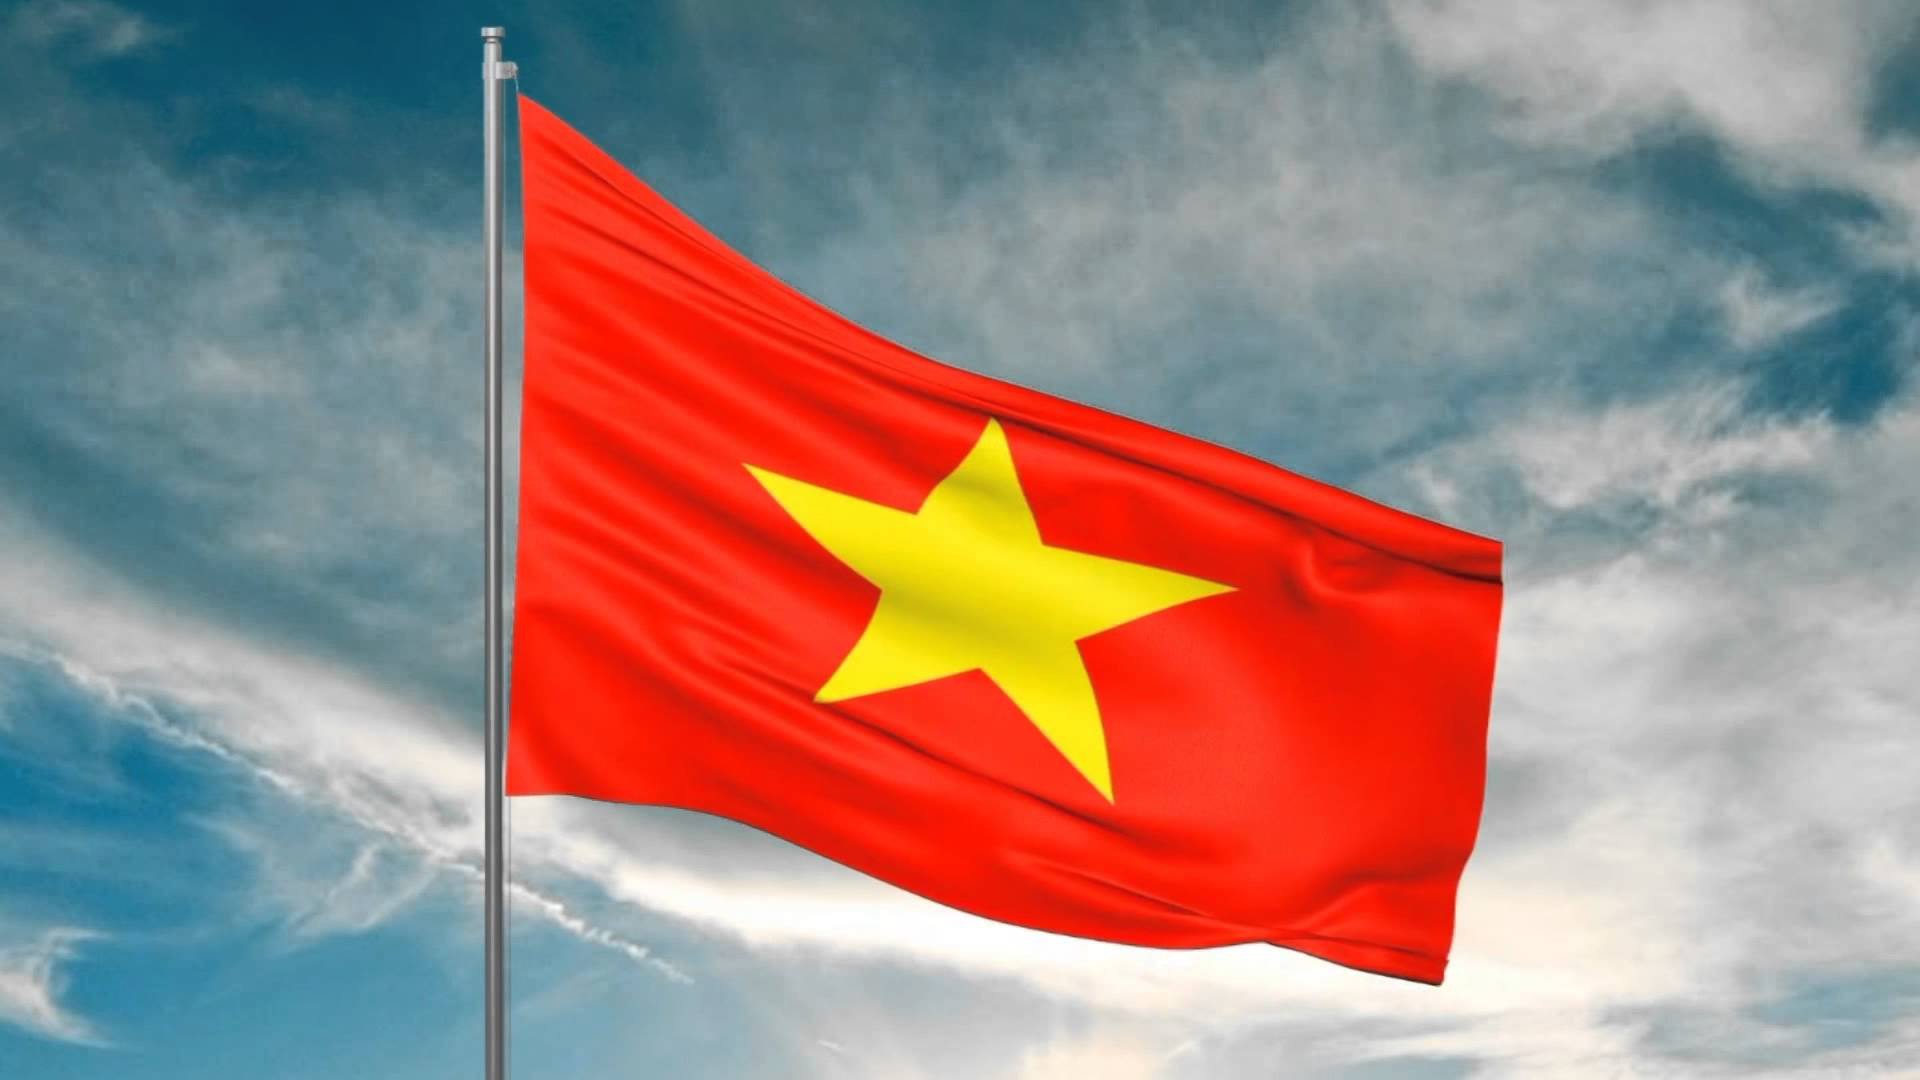 Tả như thế nào về hình ảnh Việt Nam đẹp tựa tranh vẽ? Hãy cùng nhìn lại hình ảnh đất nước Việt Nam được thể hiện qua ống kính của các nhiếp ảnh gia với đủ sắc màu, kiến trúc đẹp, con người hiền hòa và thiên nhiên hùng vĩ.